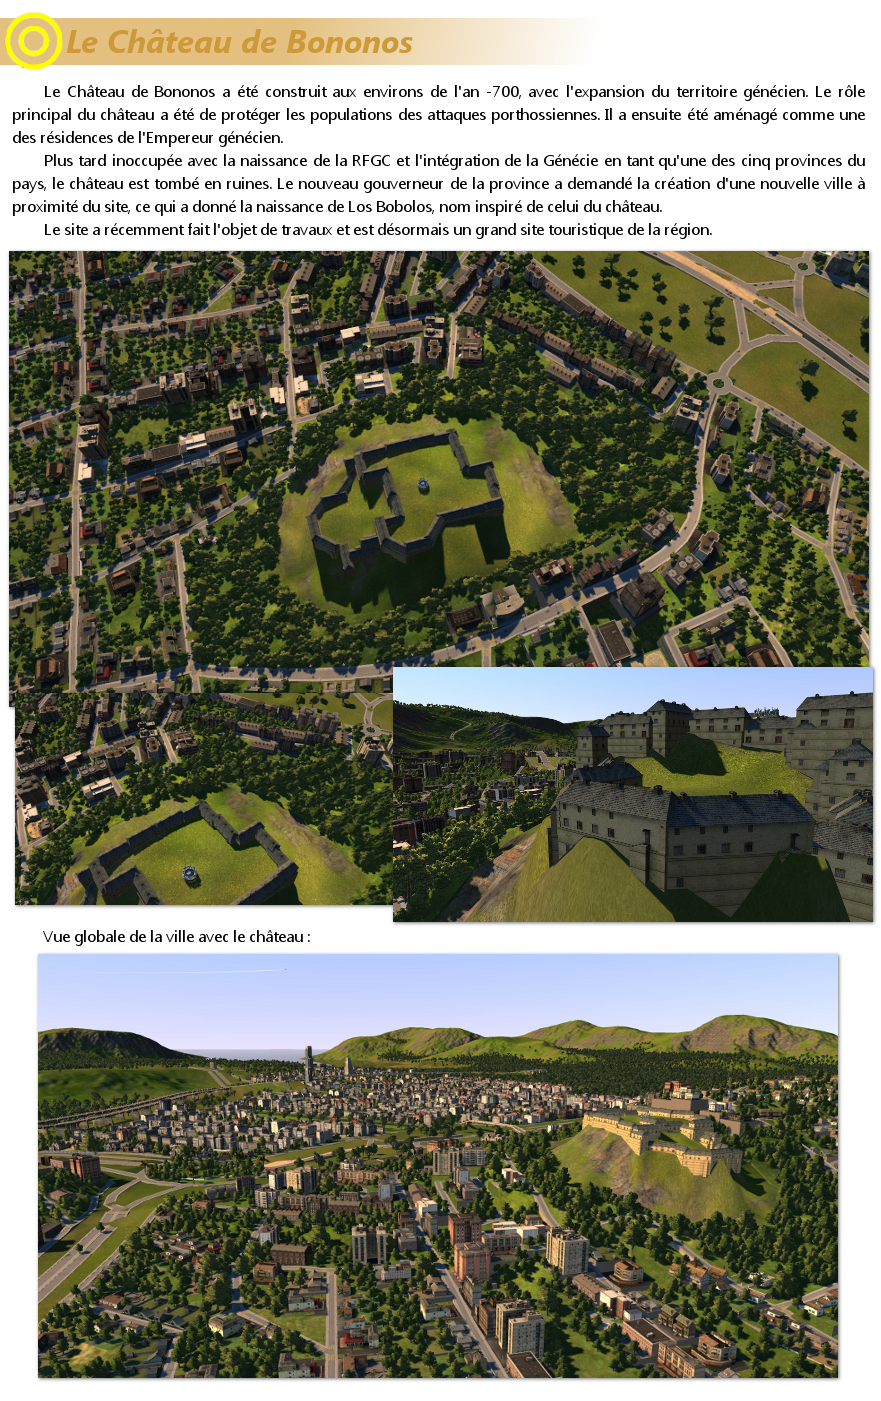 [CXL] Los Bobolos - Province de Génécie - Château / Esplanades (10/07/2011) - Page 34 110710060502509438451375